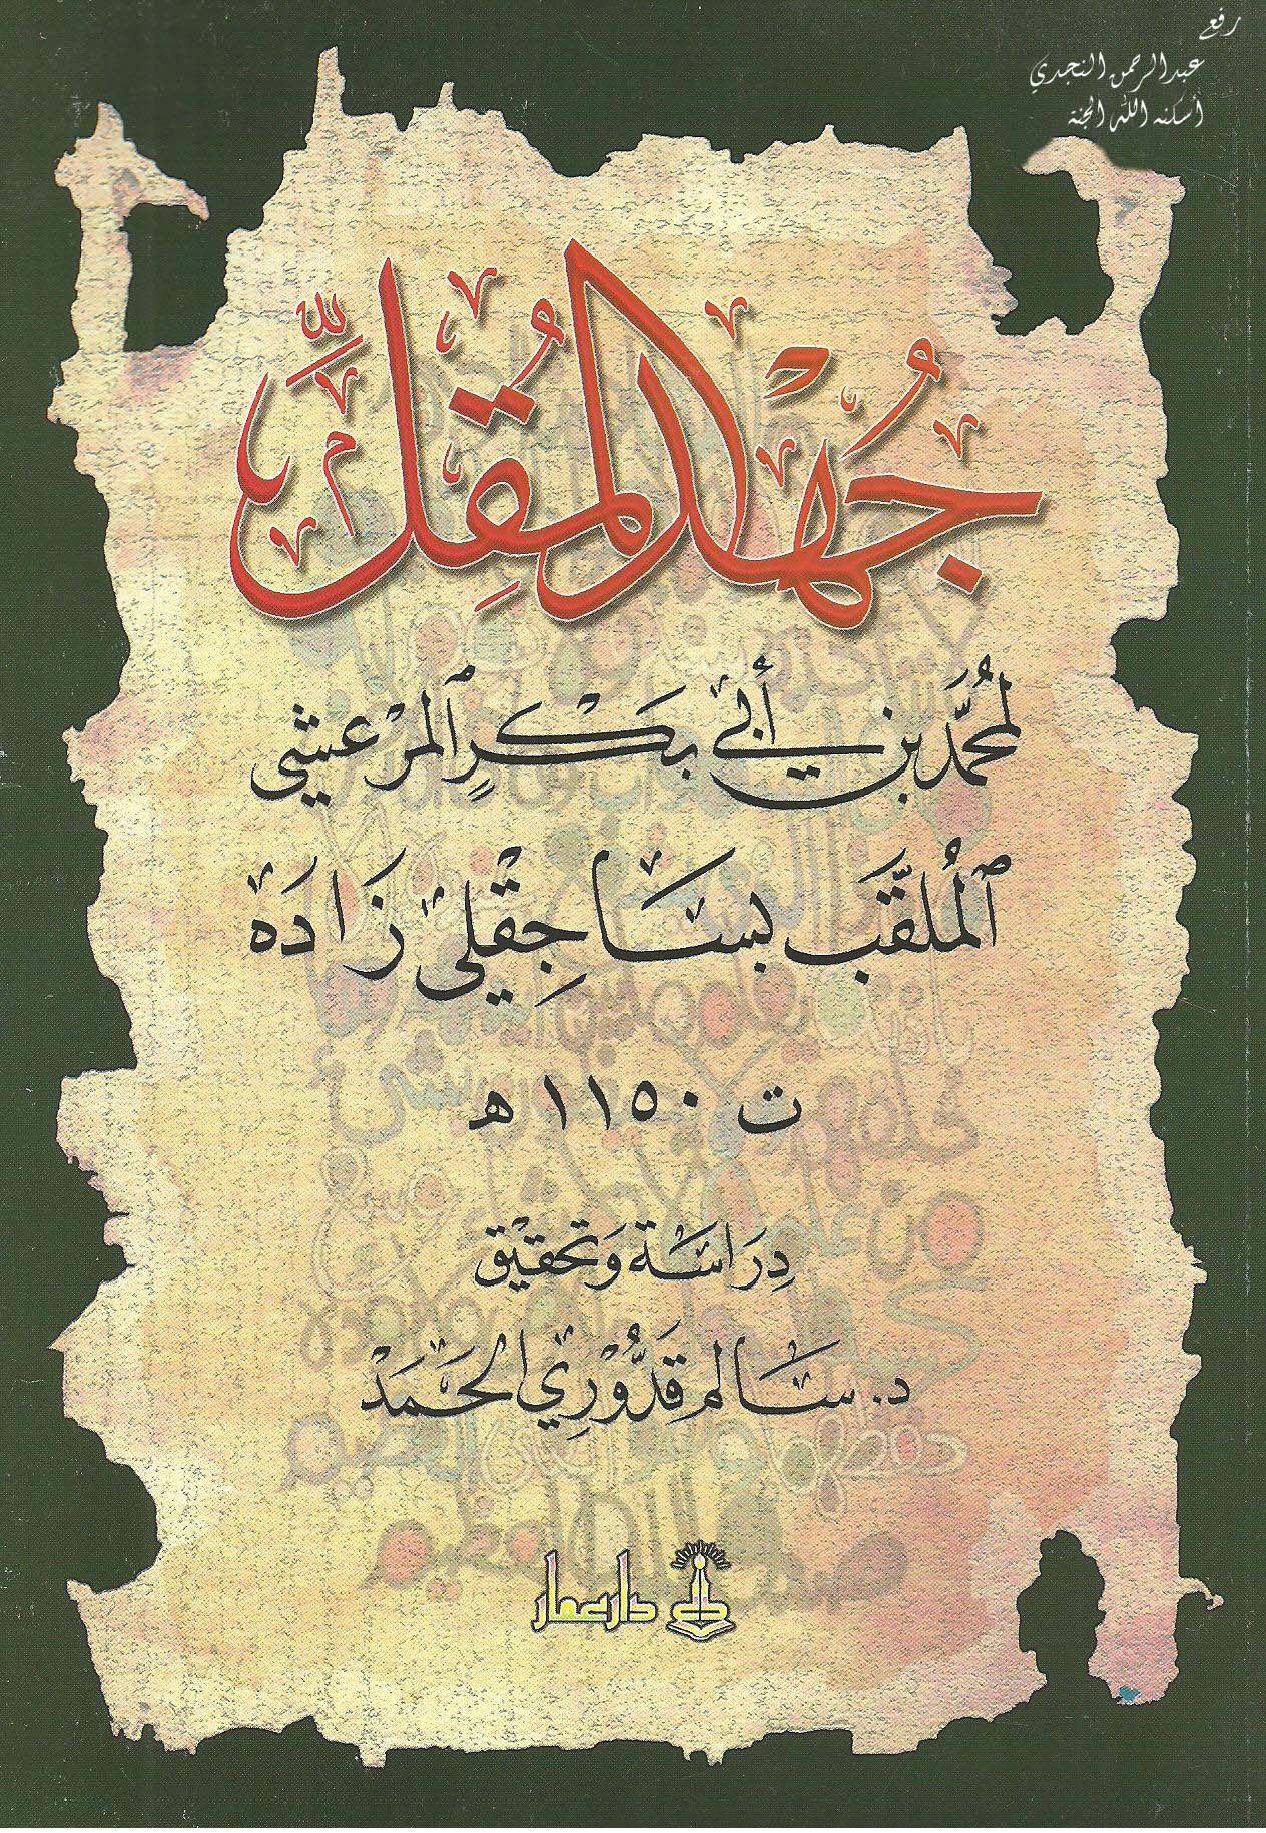 تحميل كتاب جهد المقل للمؤلف: الشيخ محمد بن أبي بكر المرعشي، الملقب بـ (ساجقلي زاده) (ت 1150)